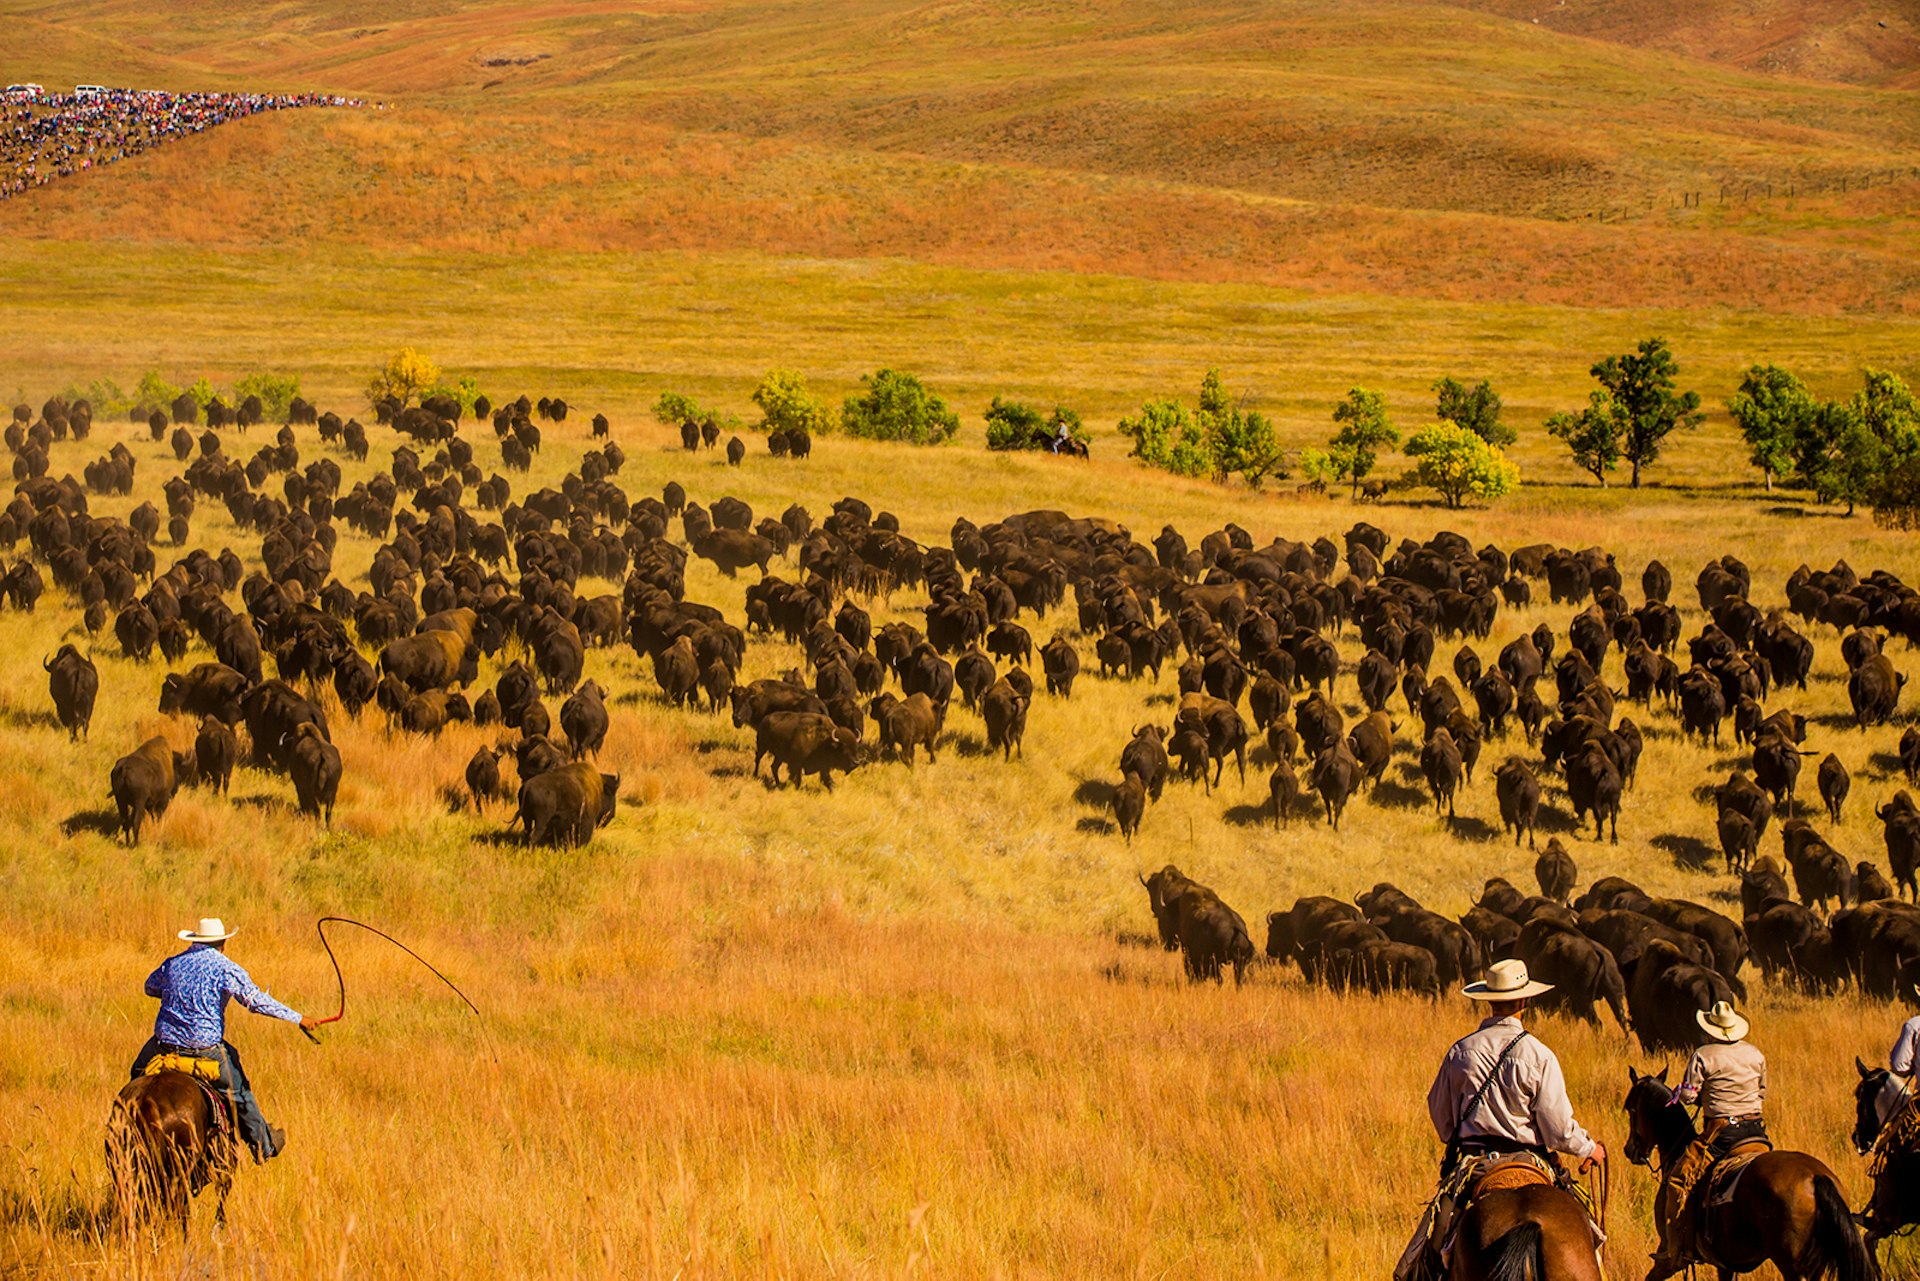 Cowboys herd American buffalo across an auburn plain